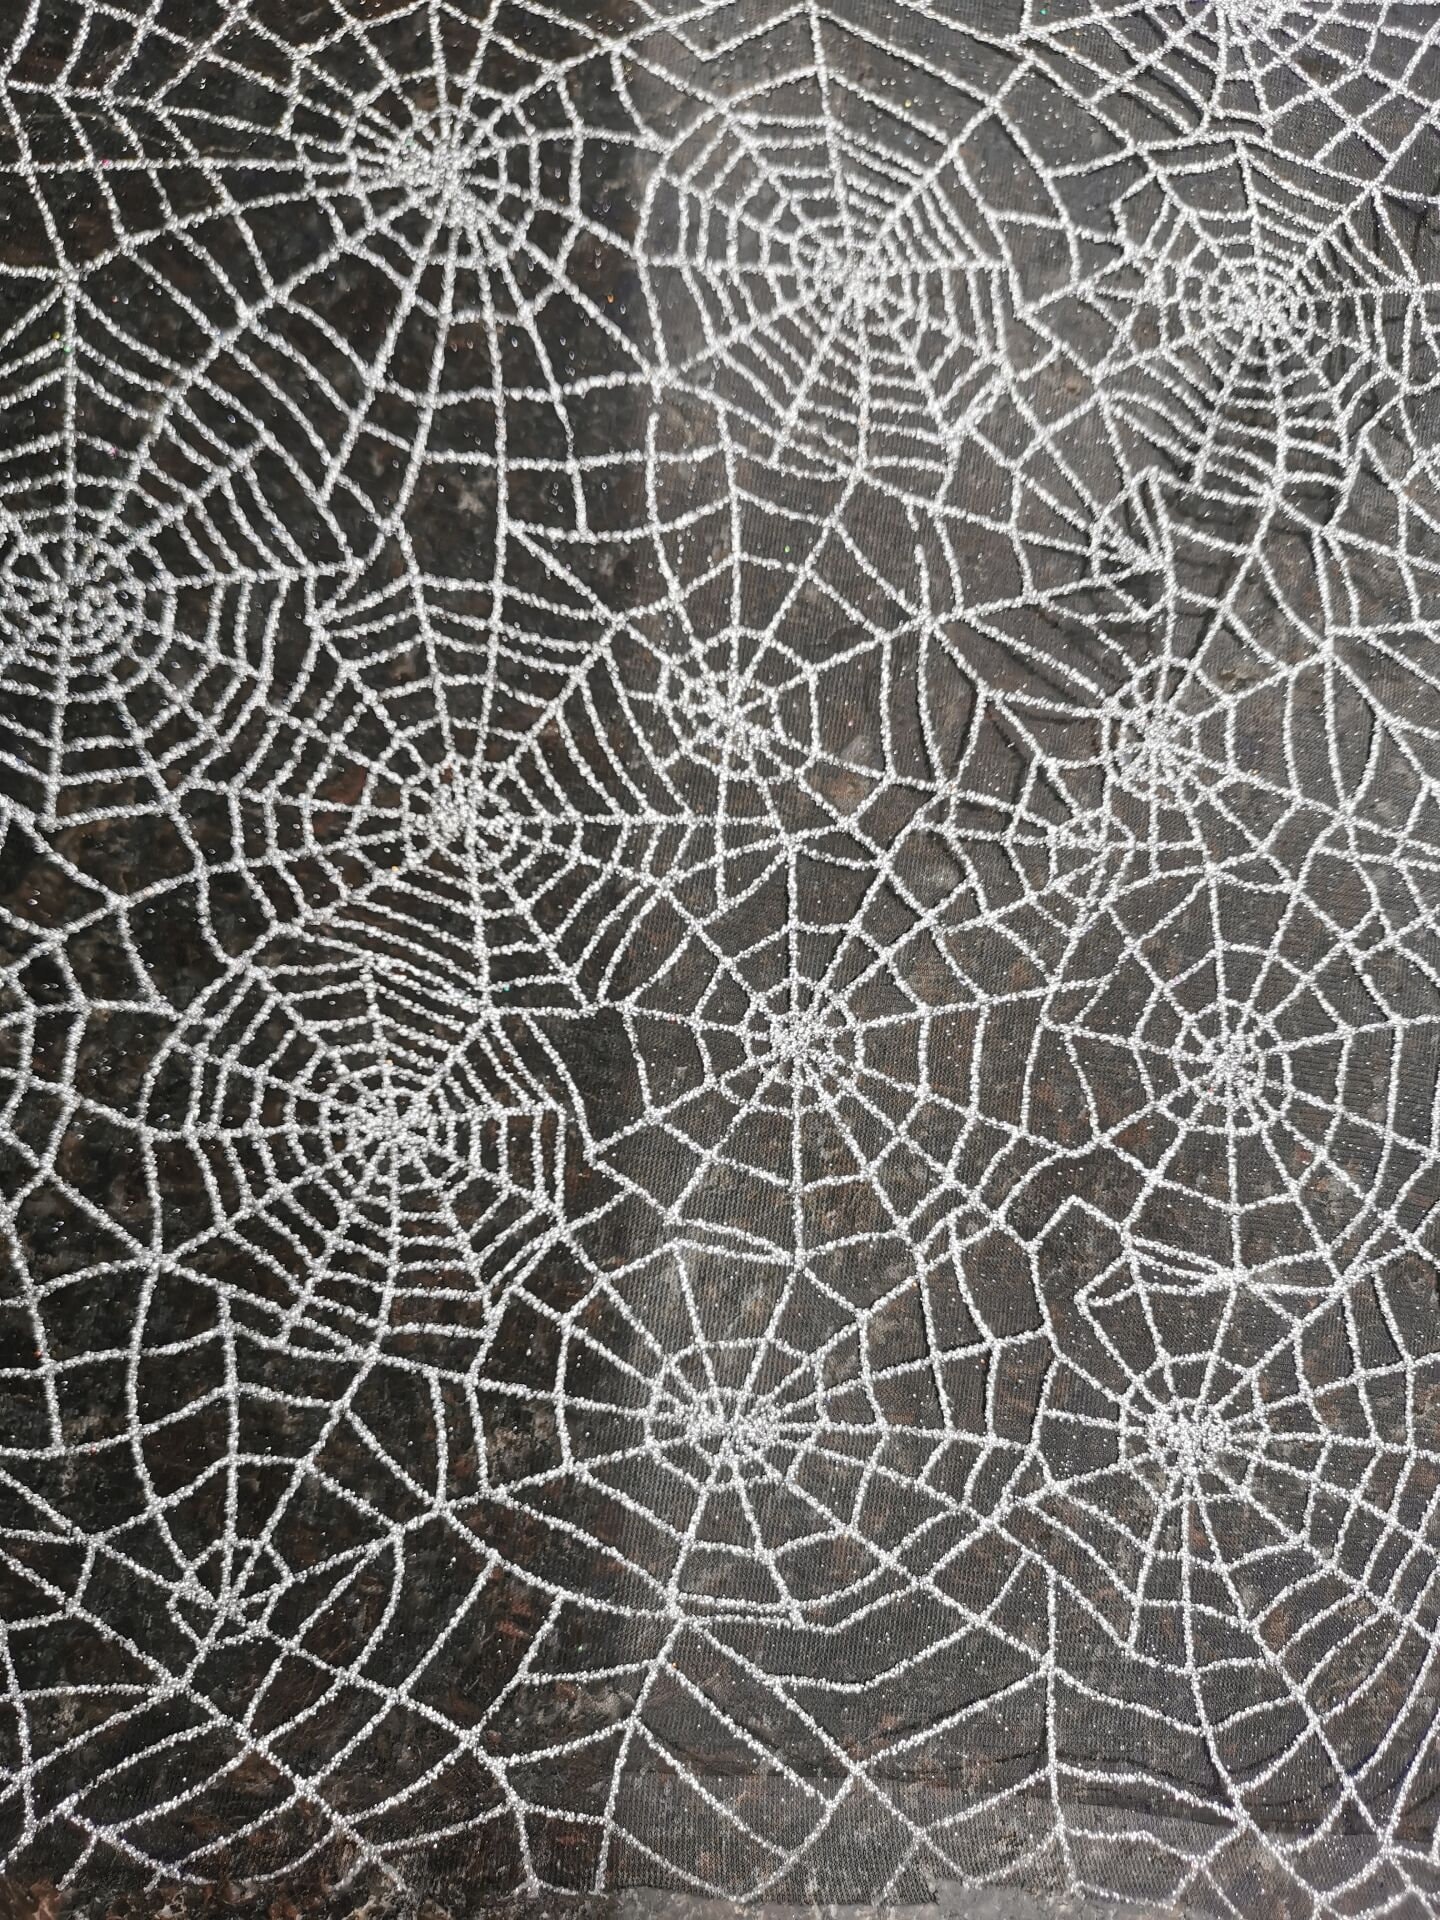 Par mètre Black Spiderweb dentelle net Halloween tissu